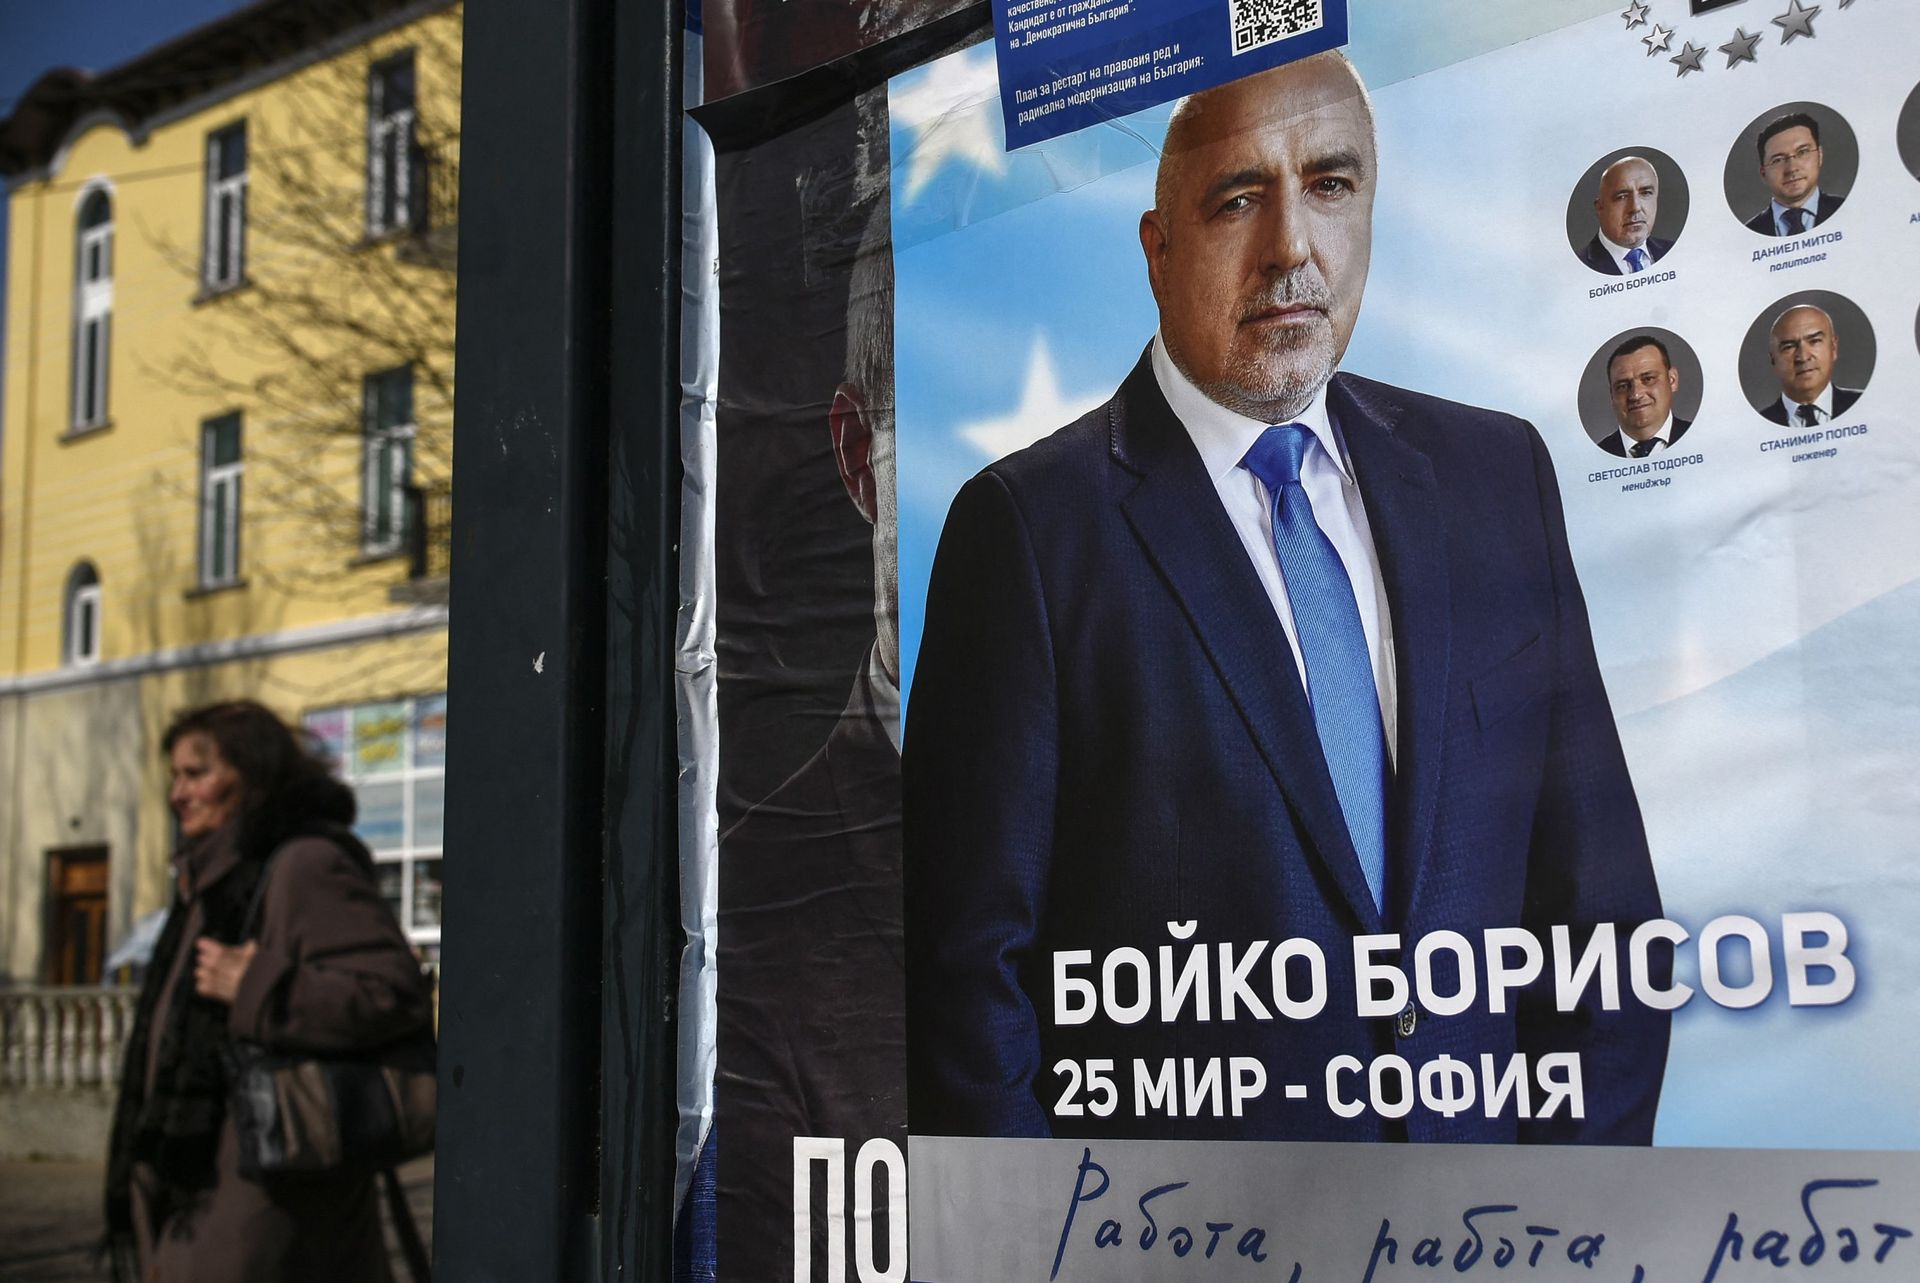 Bulgarie: une élection législative sur fond de corruption et de coronavirus